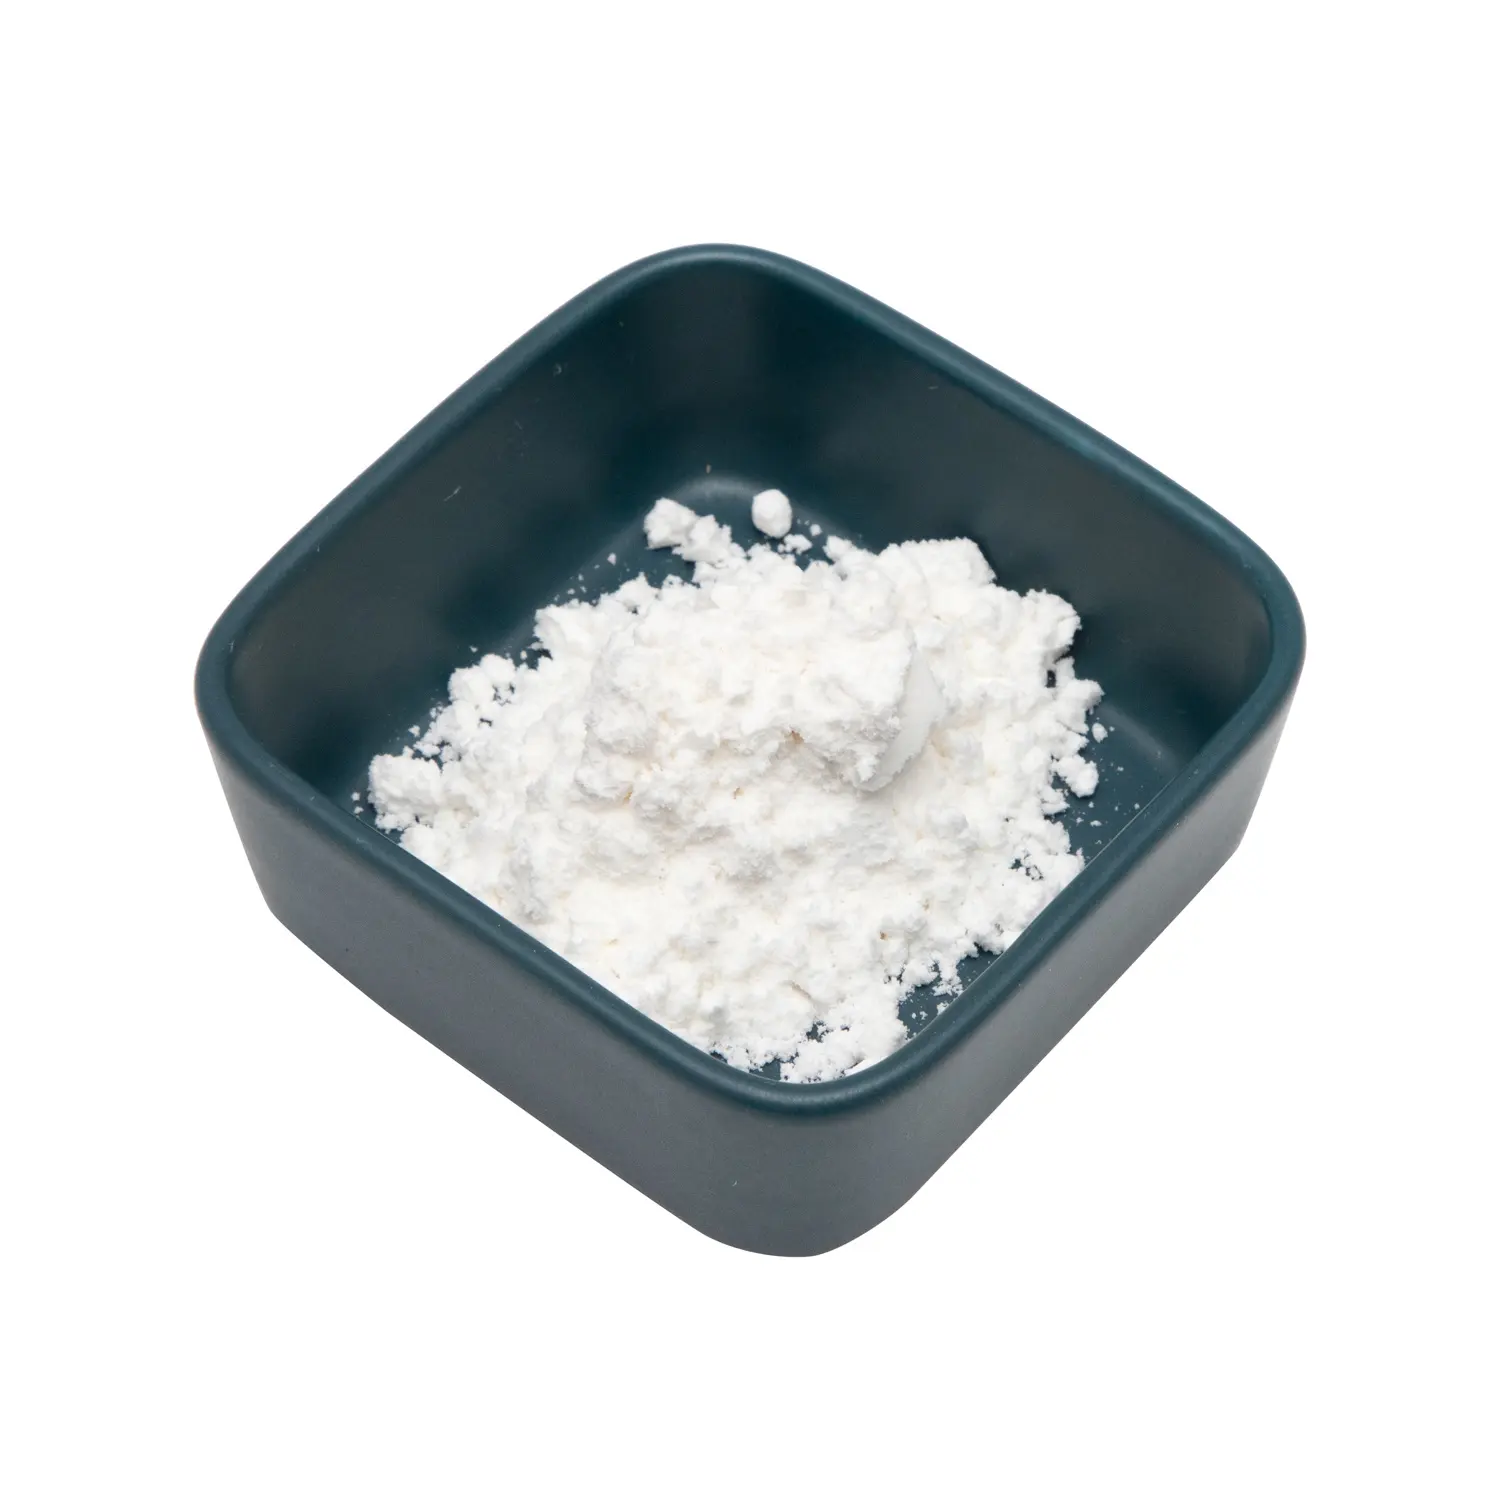 工場供給高品質ビワ葉エキス-ウルソール酸粉末98% CAS 77-52-1食品白色粉末マシュマロリーフワイルド